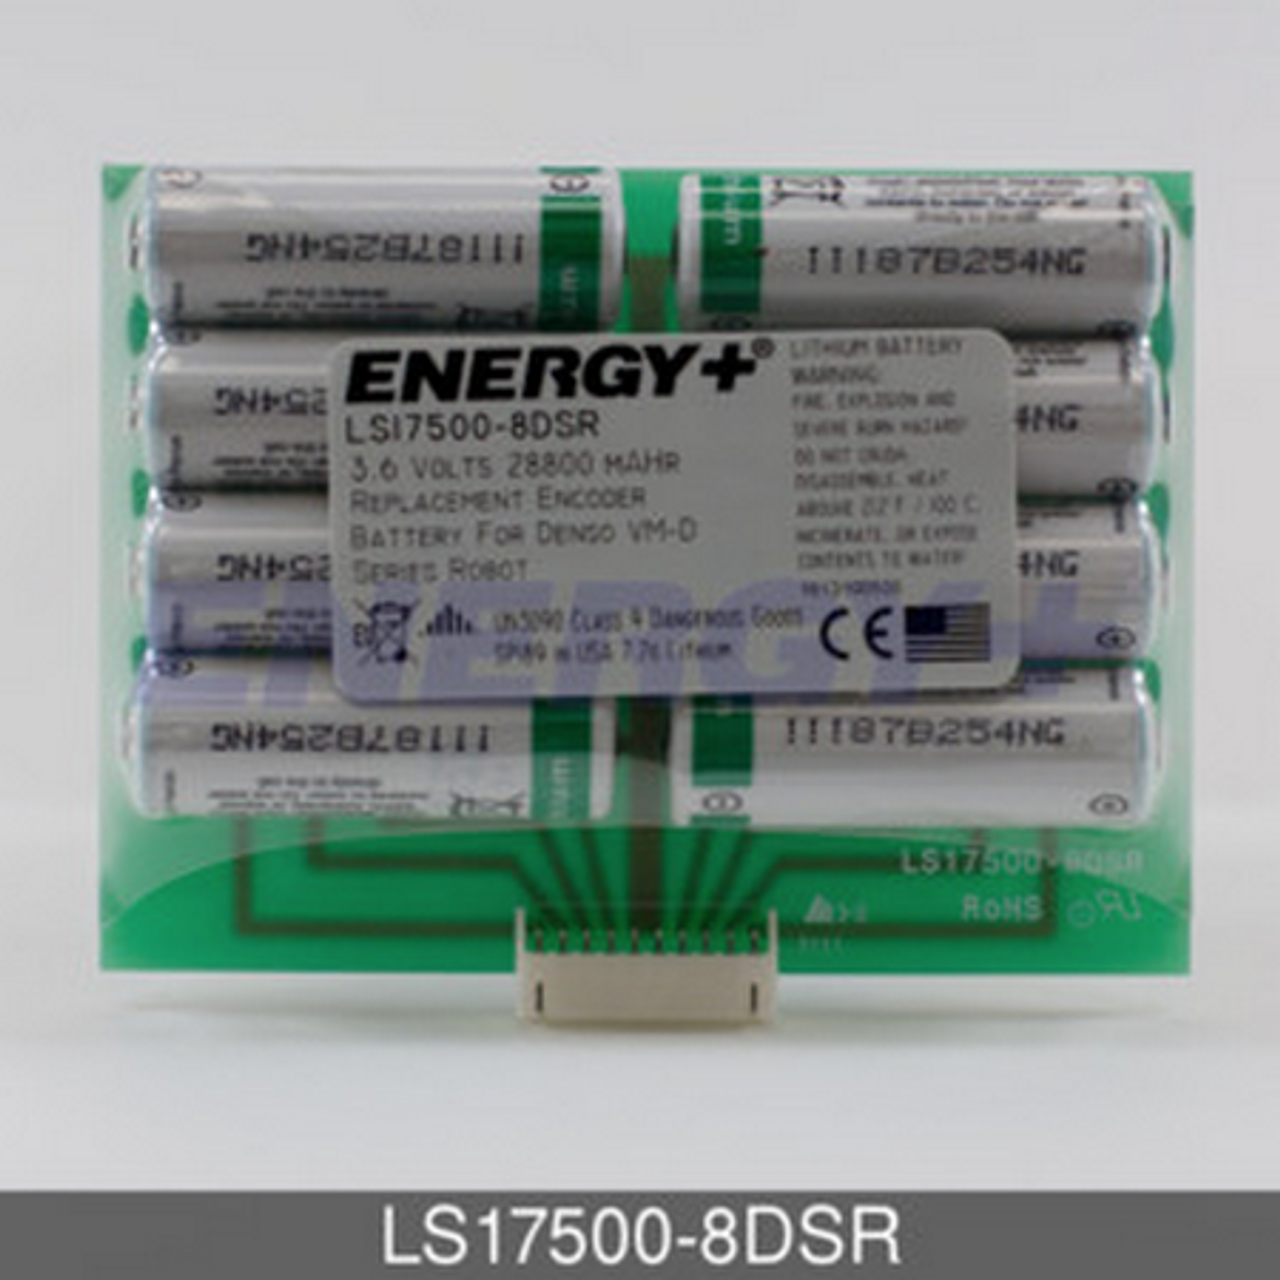 Energy+ LS17500-8DSR Battery - Robot Control Encoder Back Up